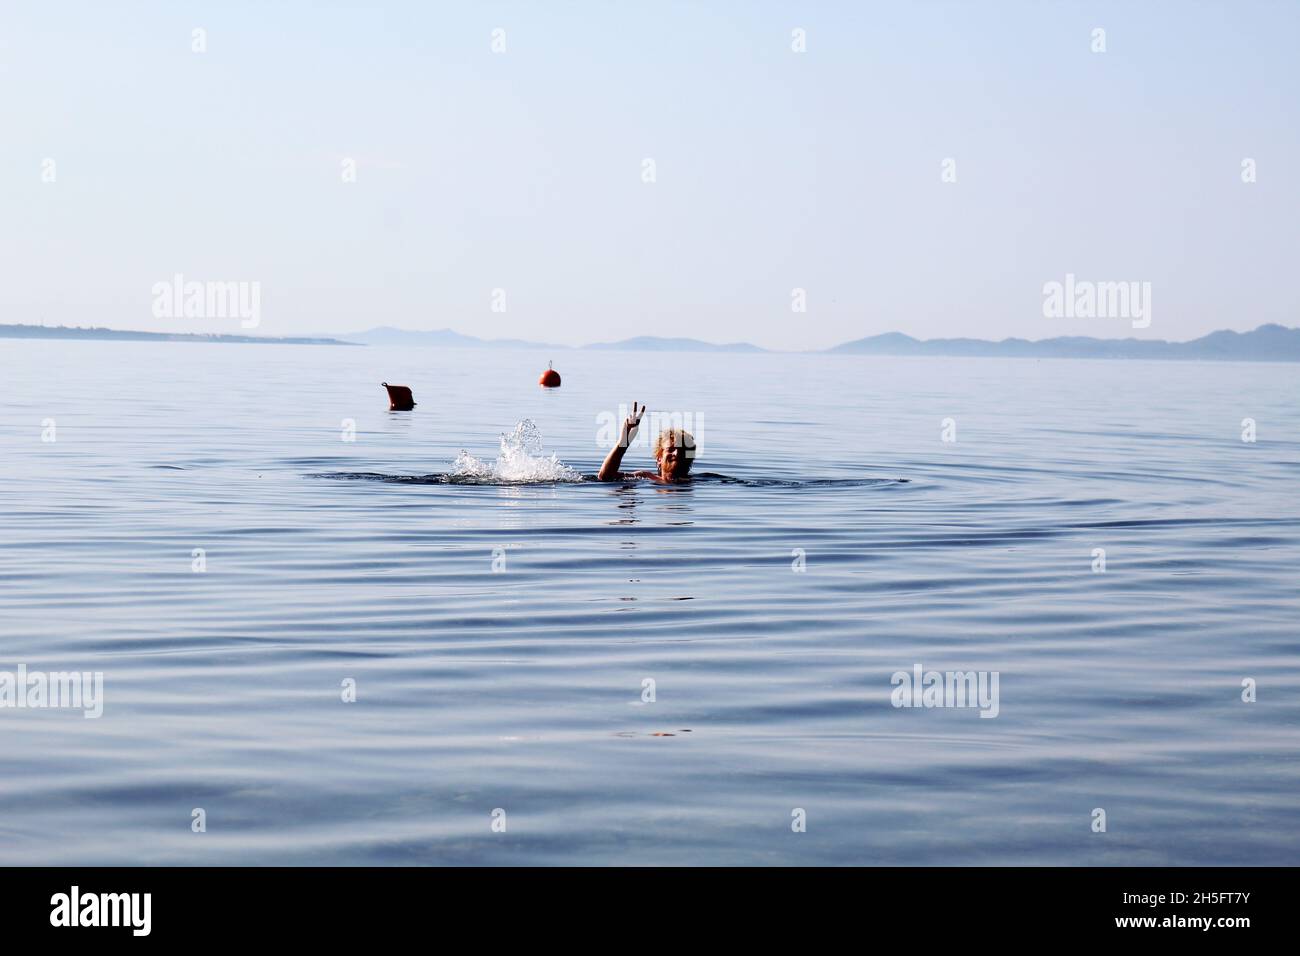 Mann schwimmt im Meer. Kopf eines Mannes, der aus dem Wasser ragt. Der Mann macht ein Peace Zeichen. Bojen im Hintergrund. Vir, Kroatien. Foto Stock